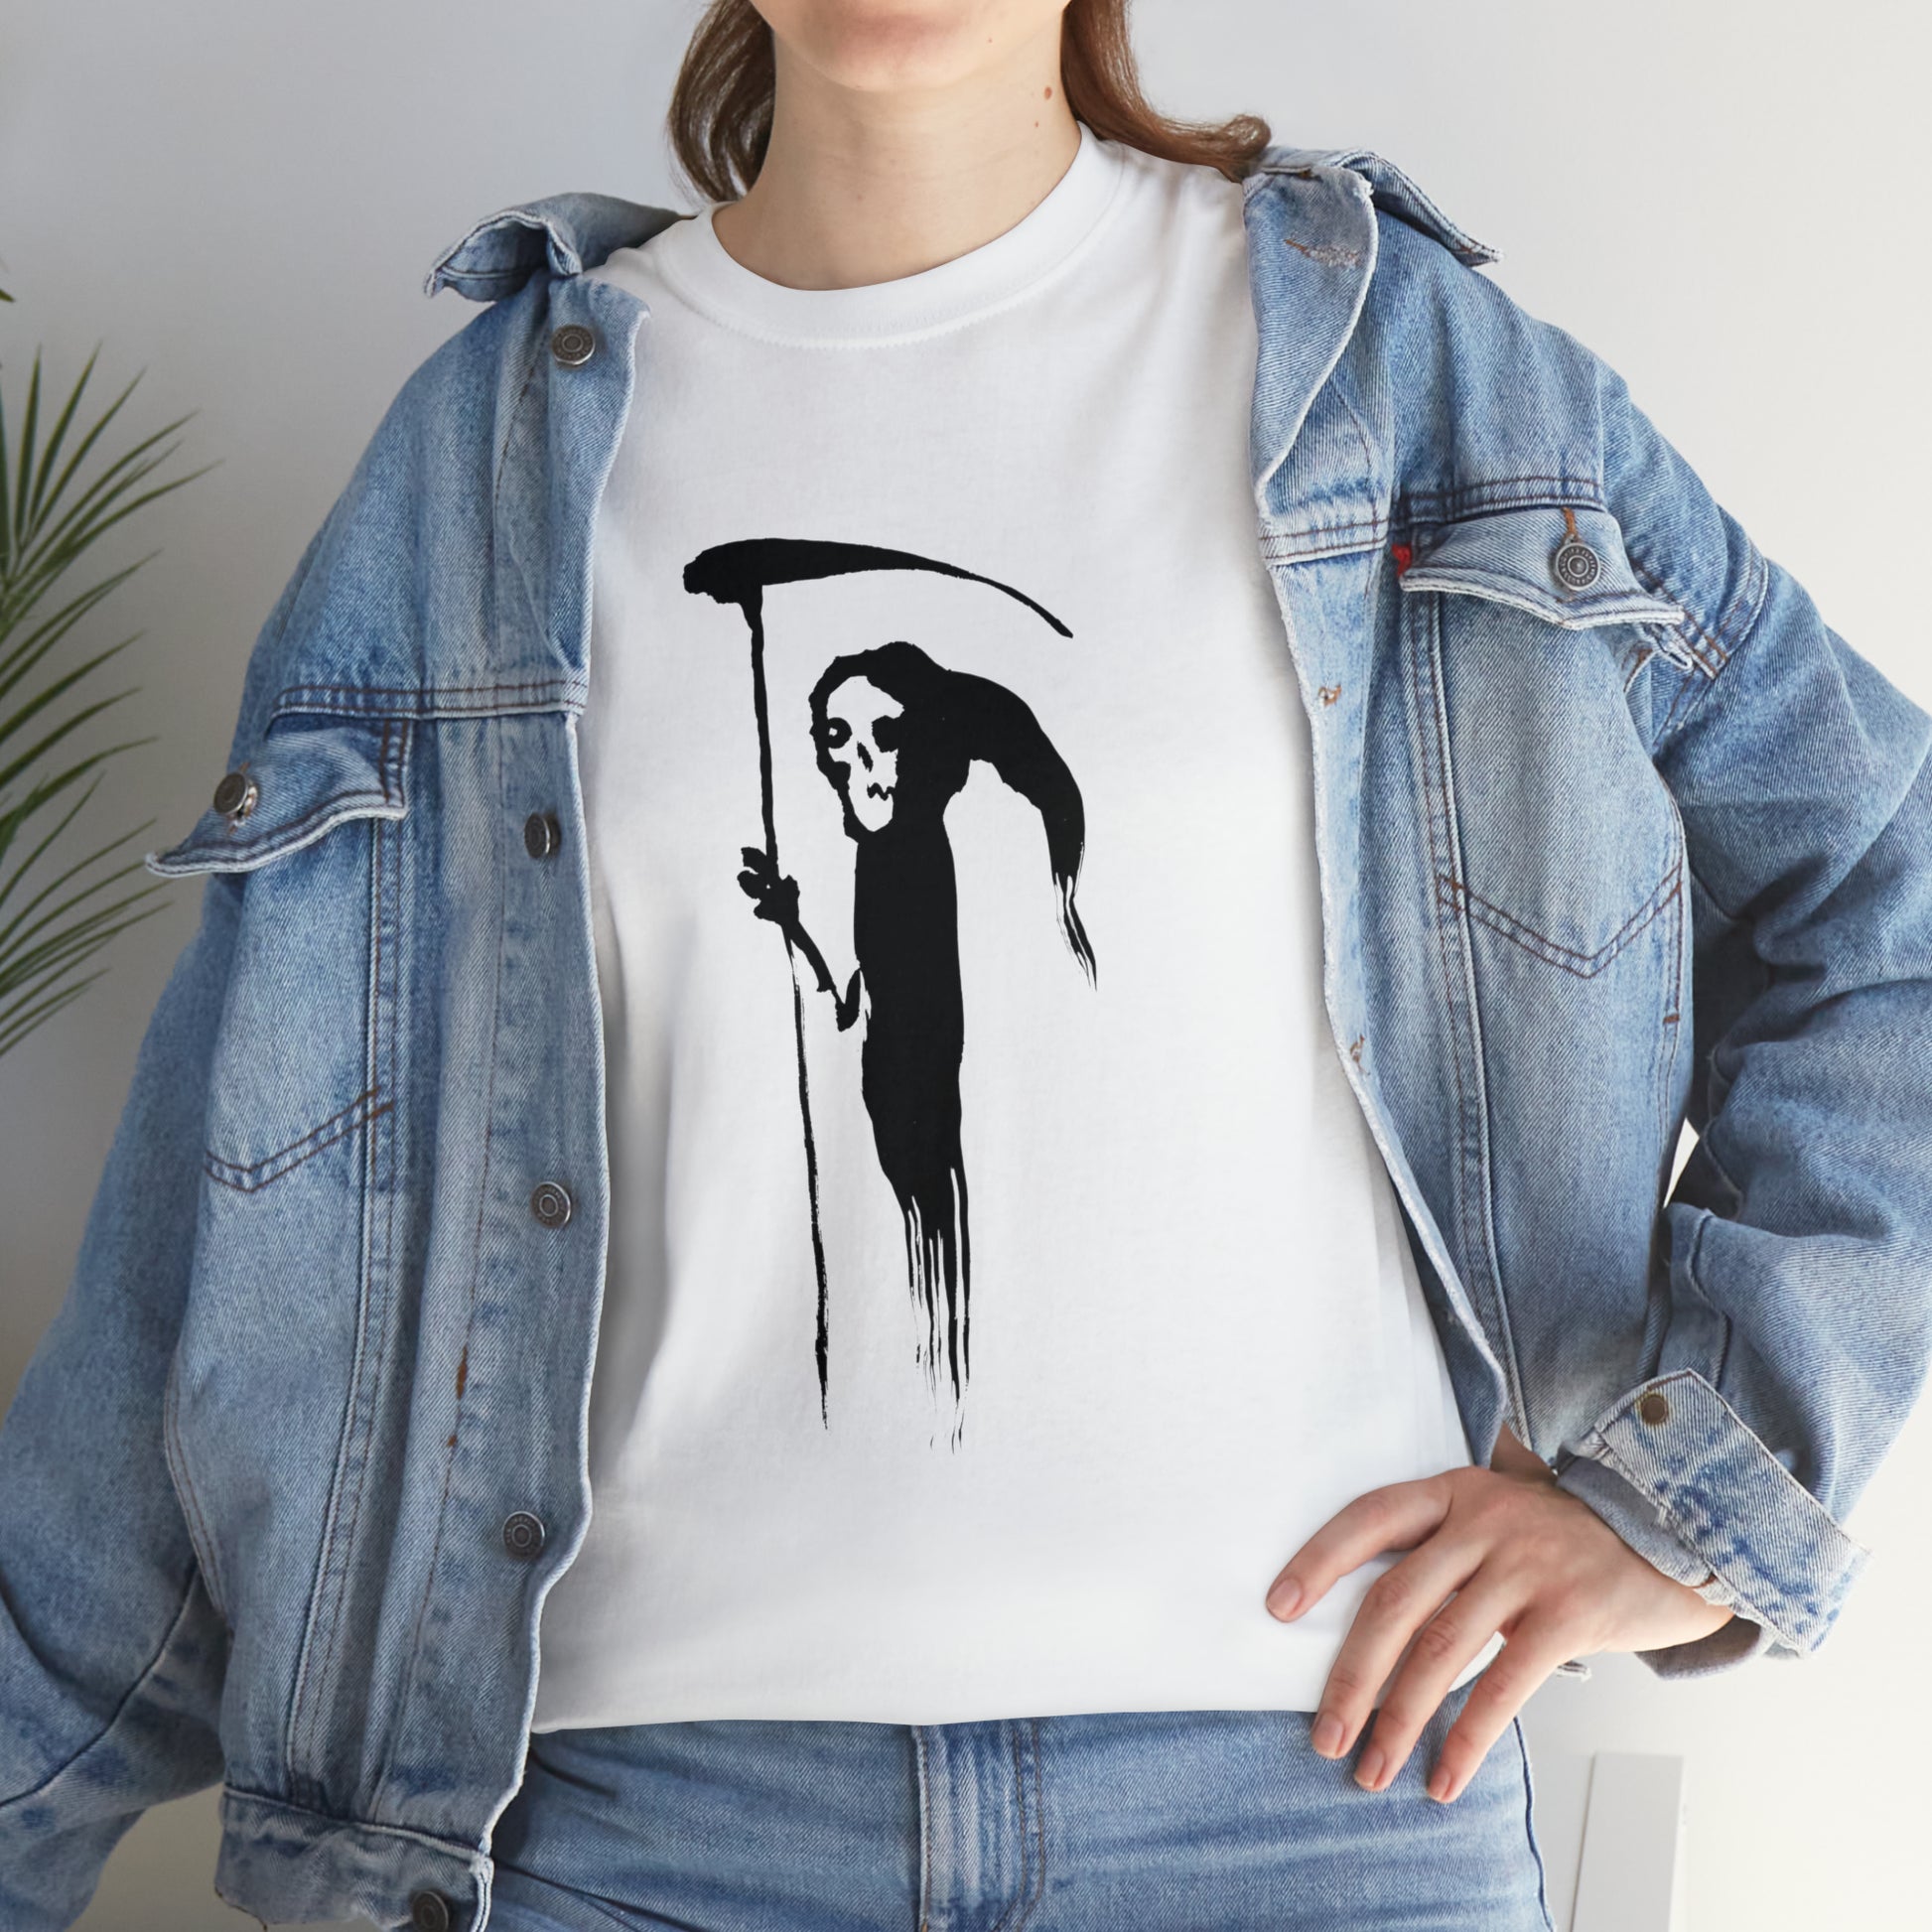 T-shirt: Minimalist Death-Kim Diaz Holm